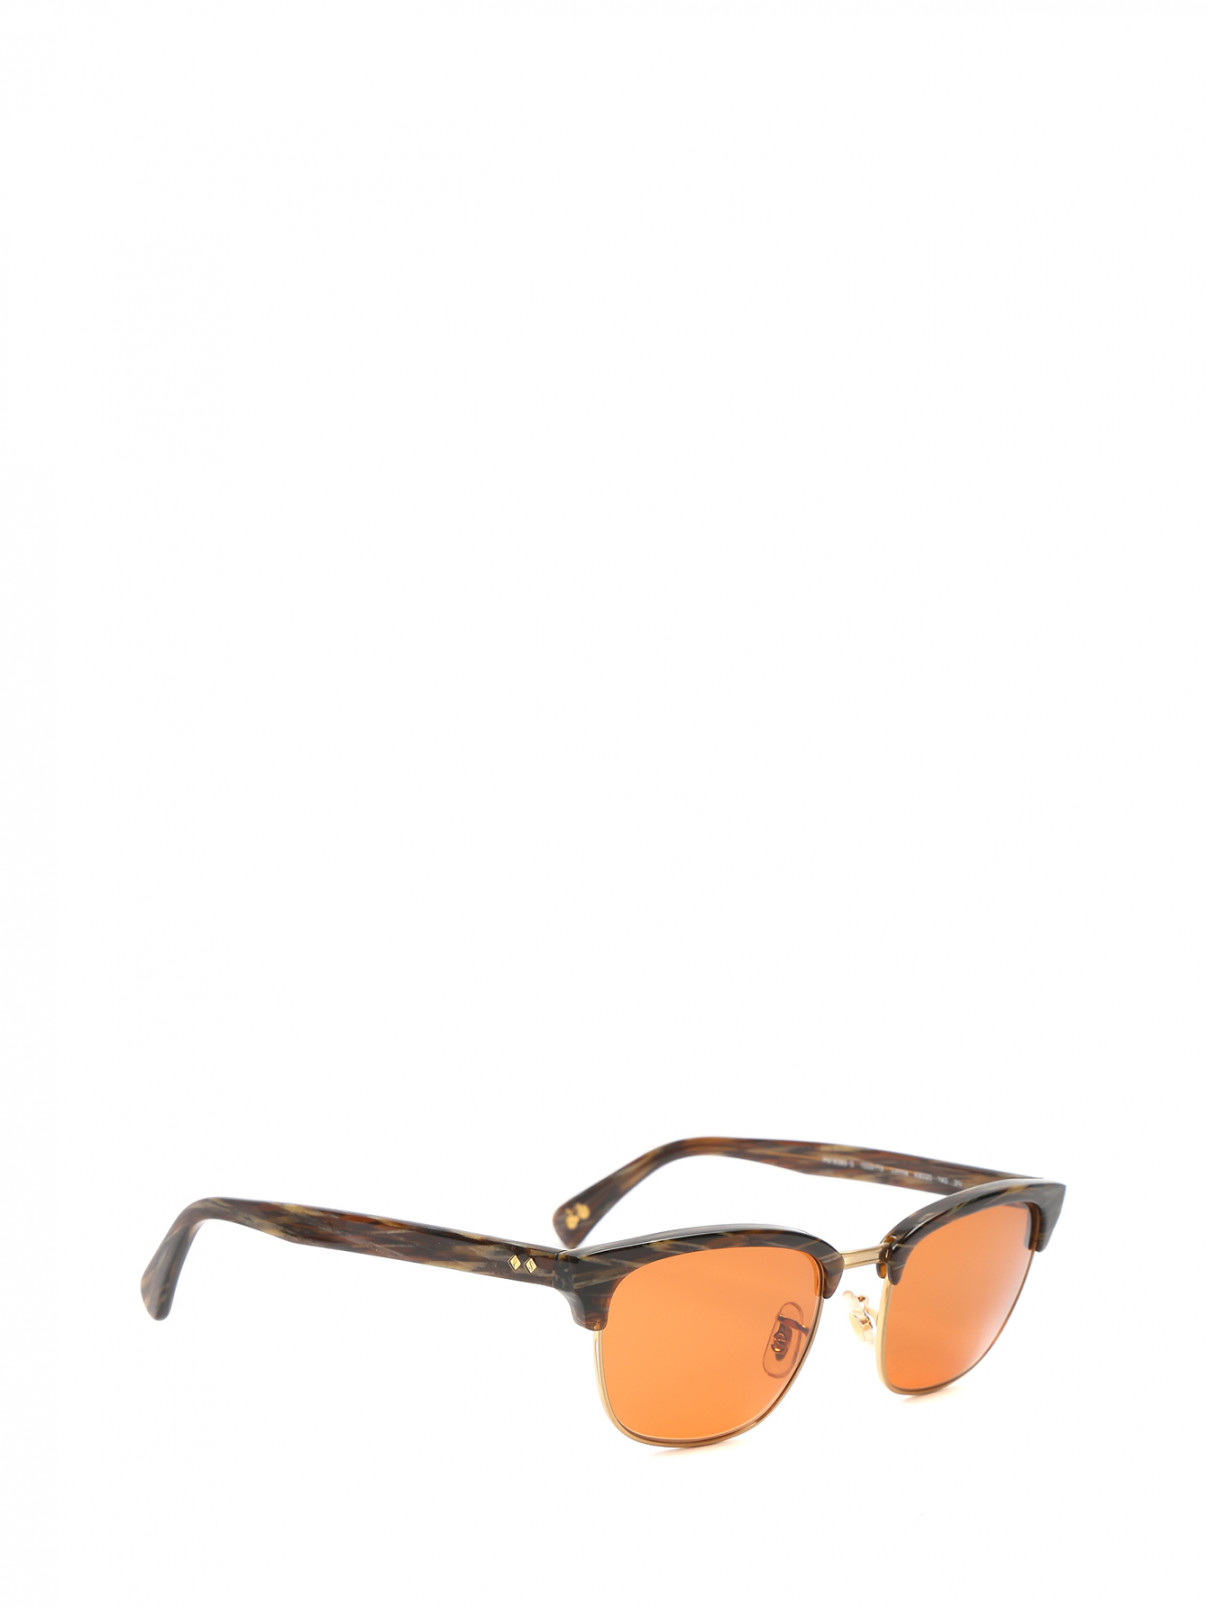 Cолнцезащитные очки с узором Paul Smith  –  Обтравка1  – Цвет:  Узор